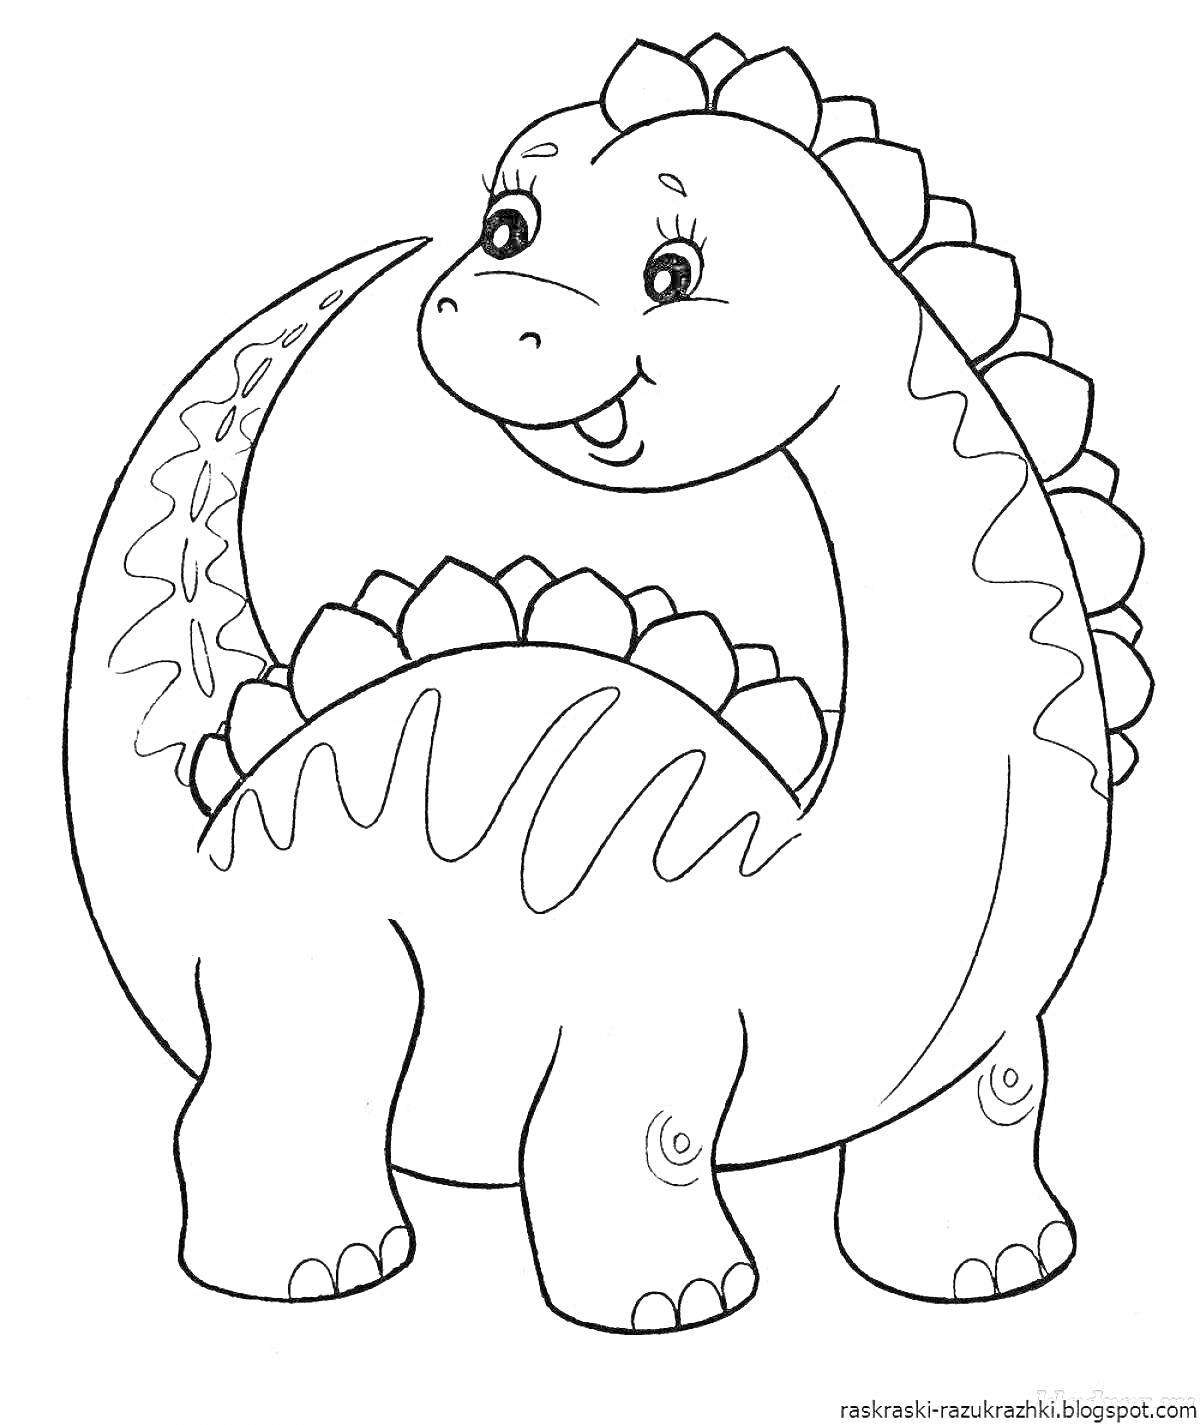 Раскраска Динозавр с улыбкой и шипами на спине